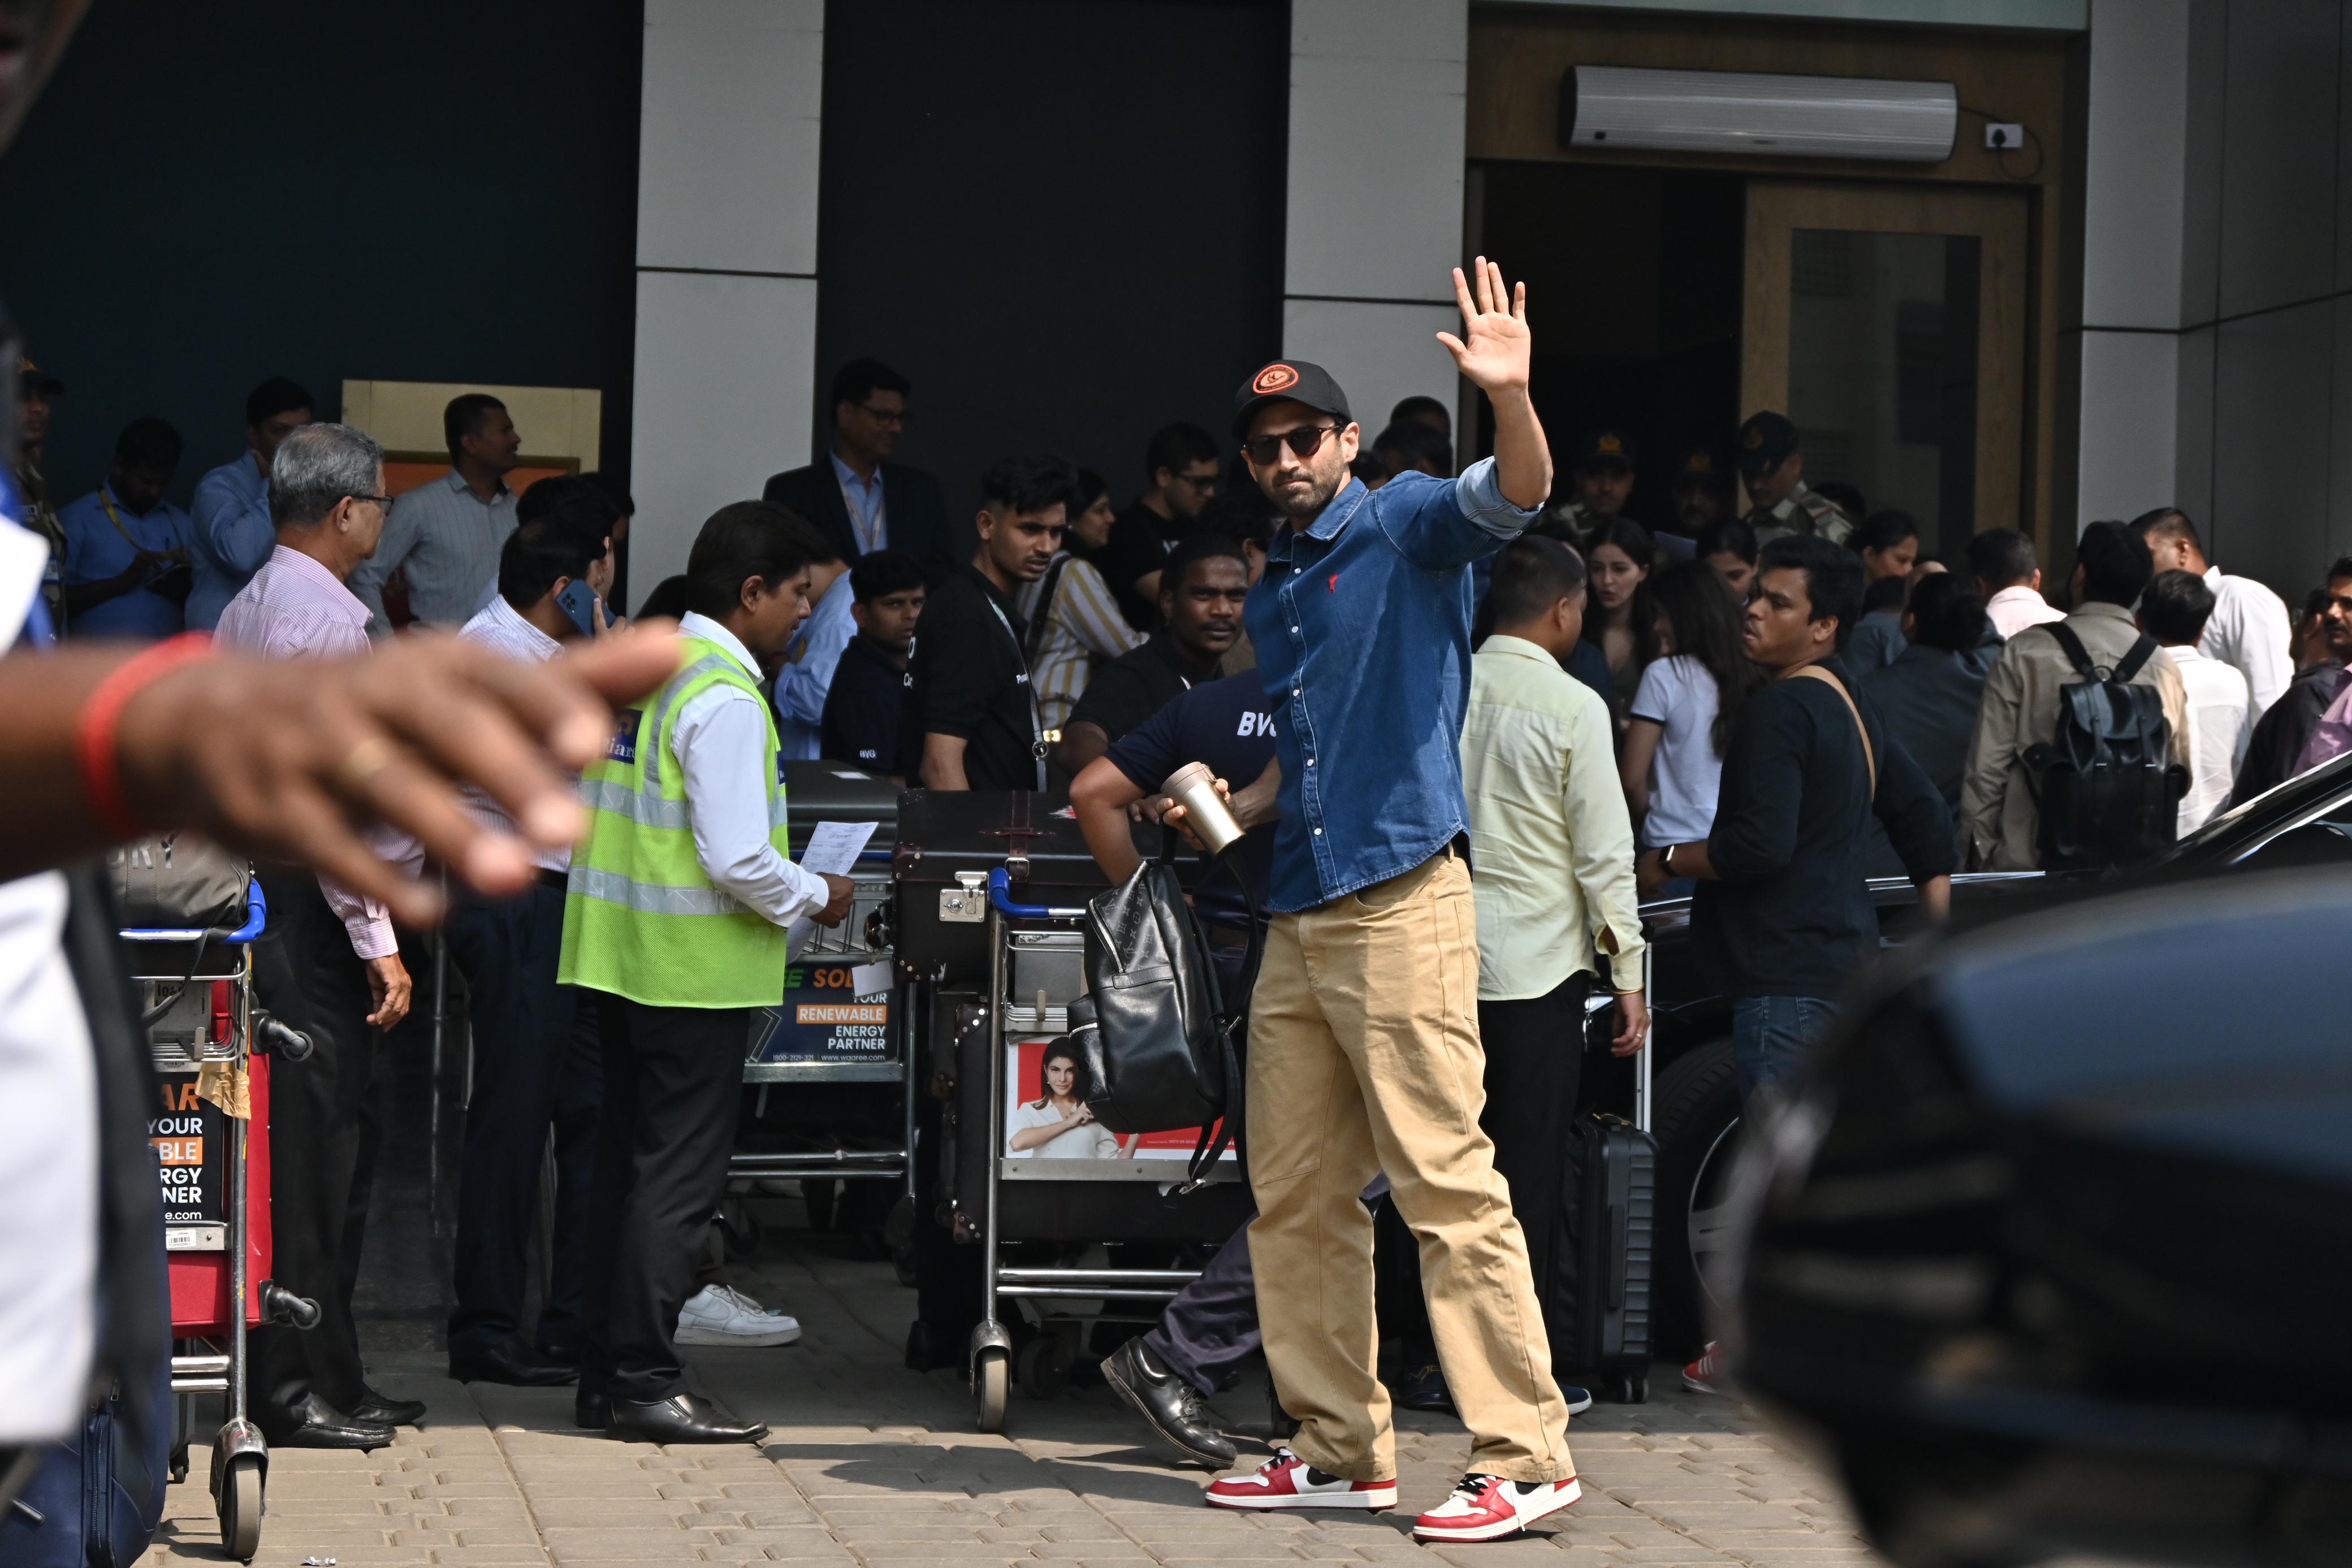 Aditya Roy Kapur and Ananya Panday were also spotted at the Kalina airport